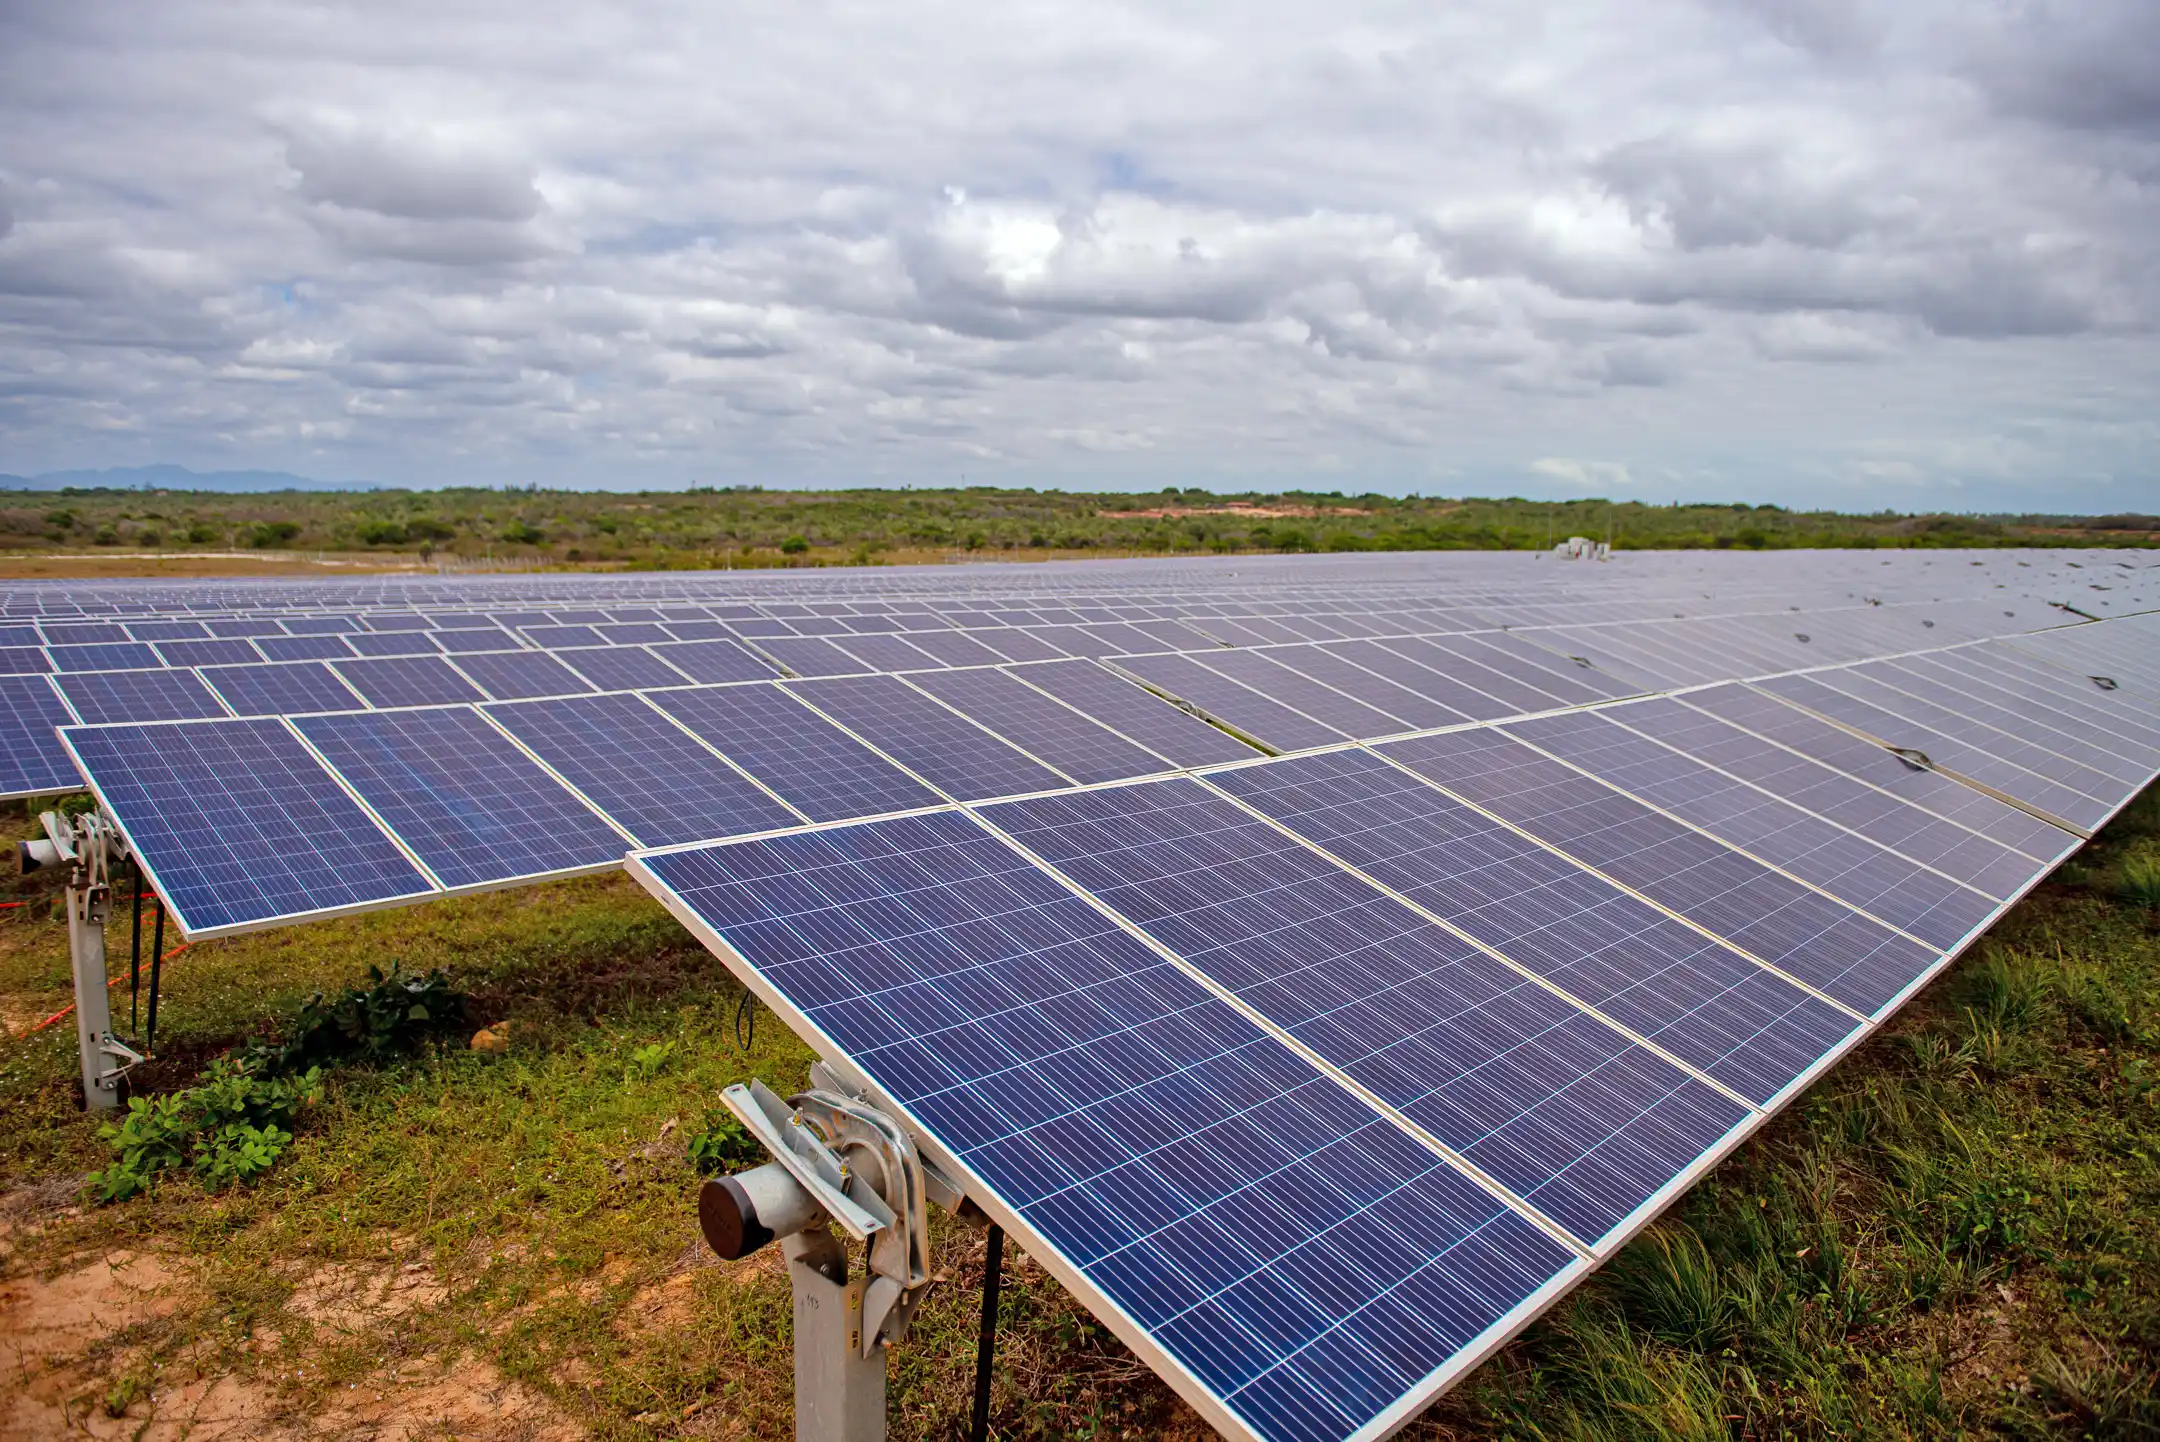 Engie compra cinco usinas solares da Atlas Renewable Energy por R$ 3,2 bilhões. Na imagem: Fileiras de placas fotovoltaicas instaladas sobre o solo na usina solar Sol do Futuro (81 MWac), no Ceará (Foto: Divulgação)